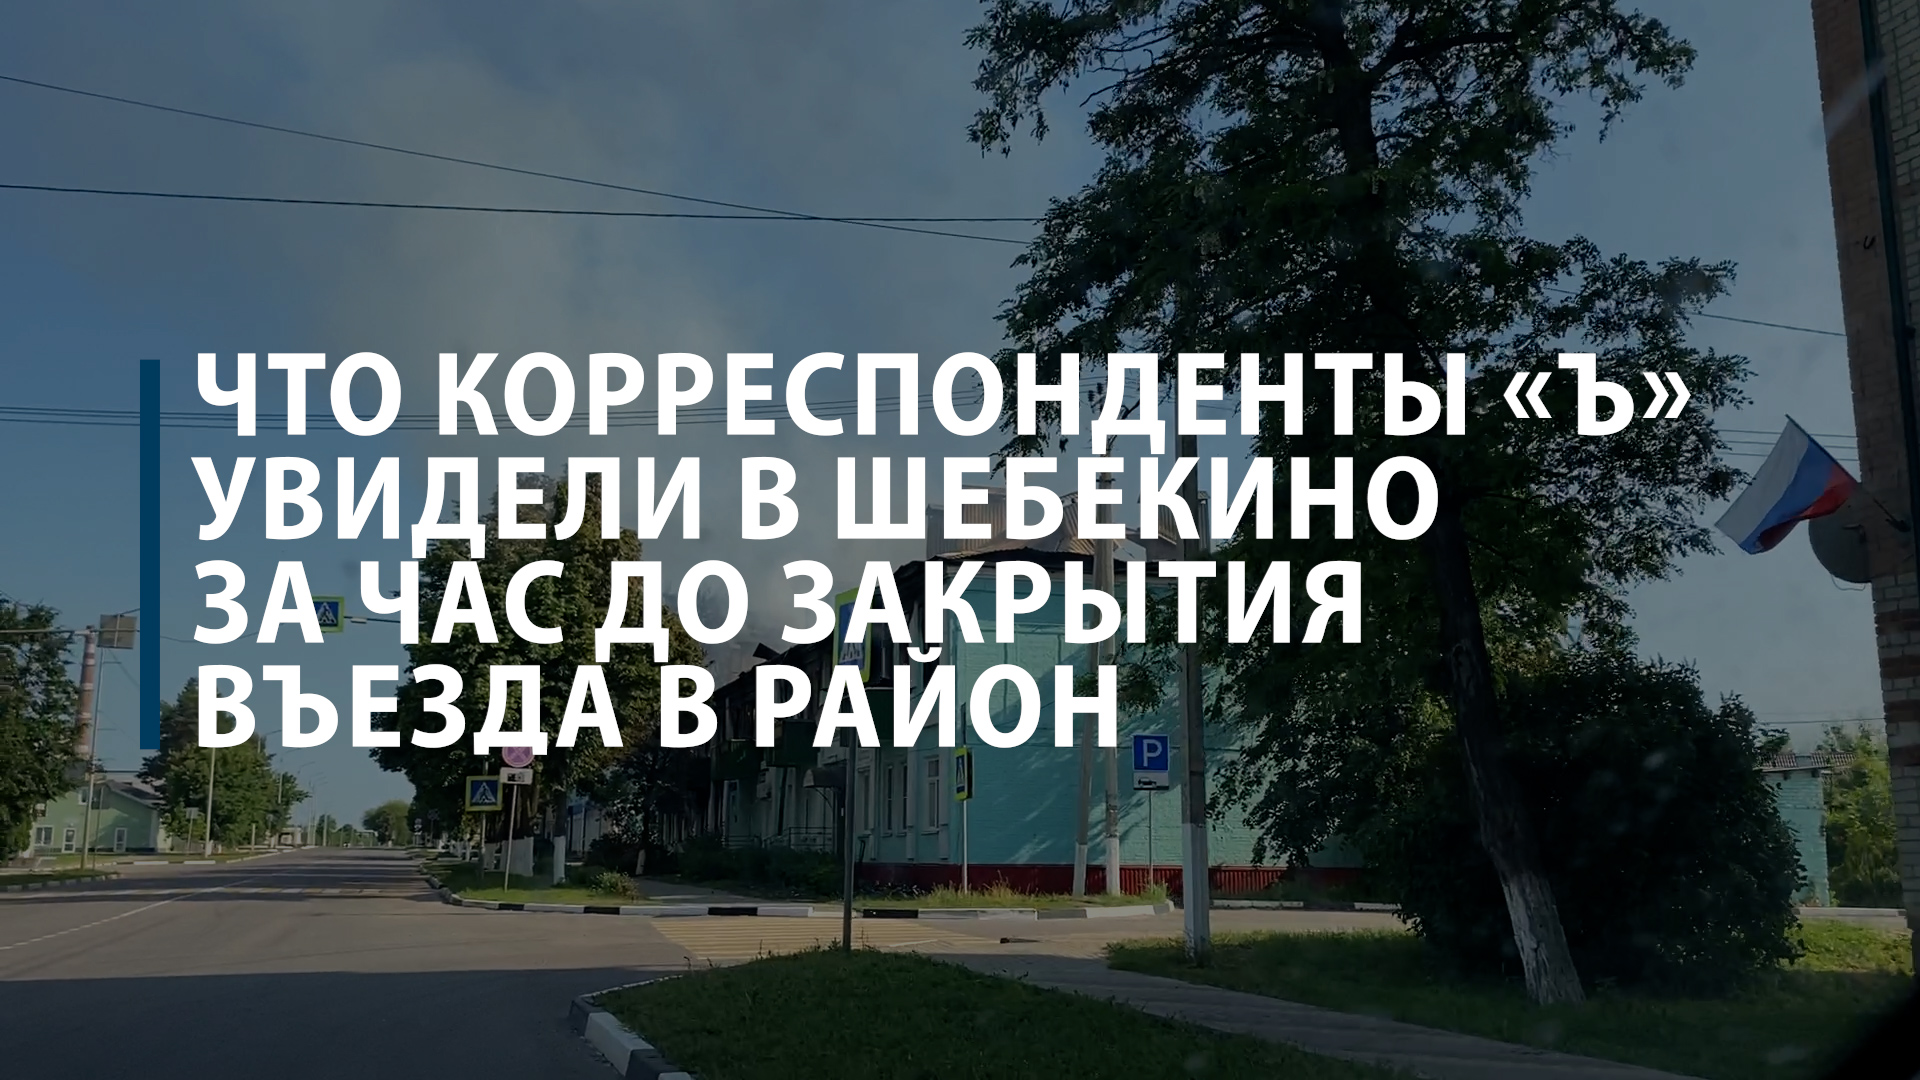 Что корреспонденты «Ъ» увидели в Шебекино за час до закрытия въезда в район